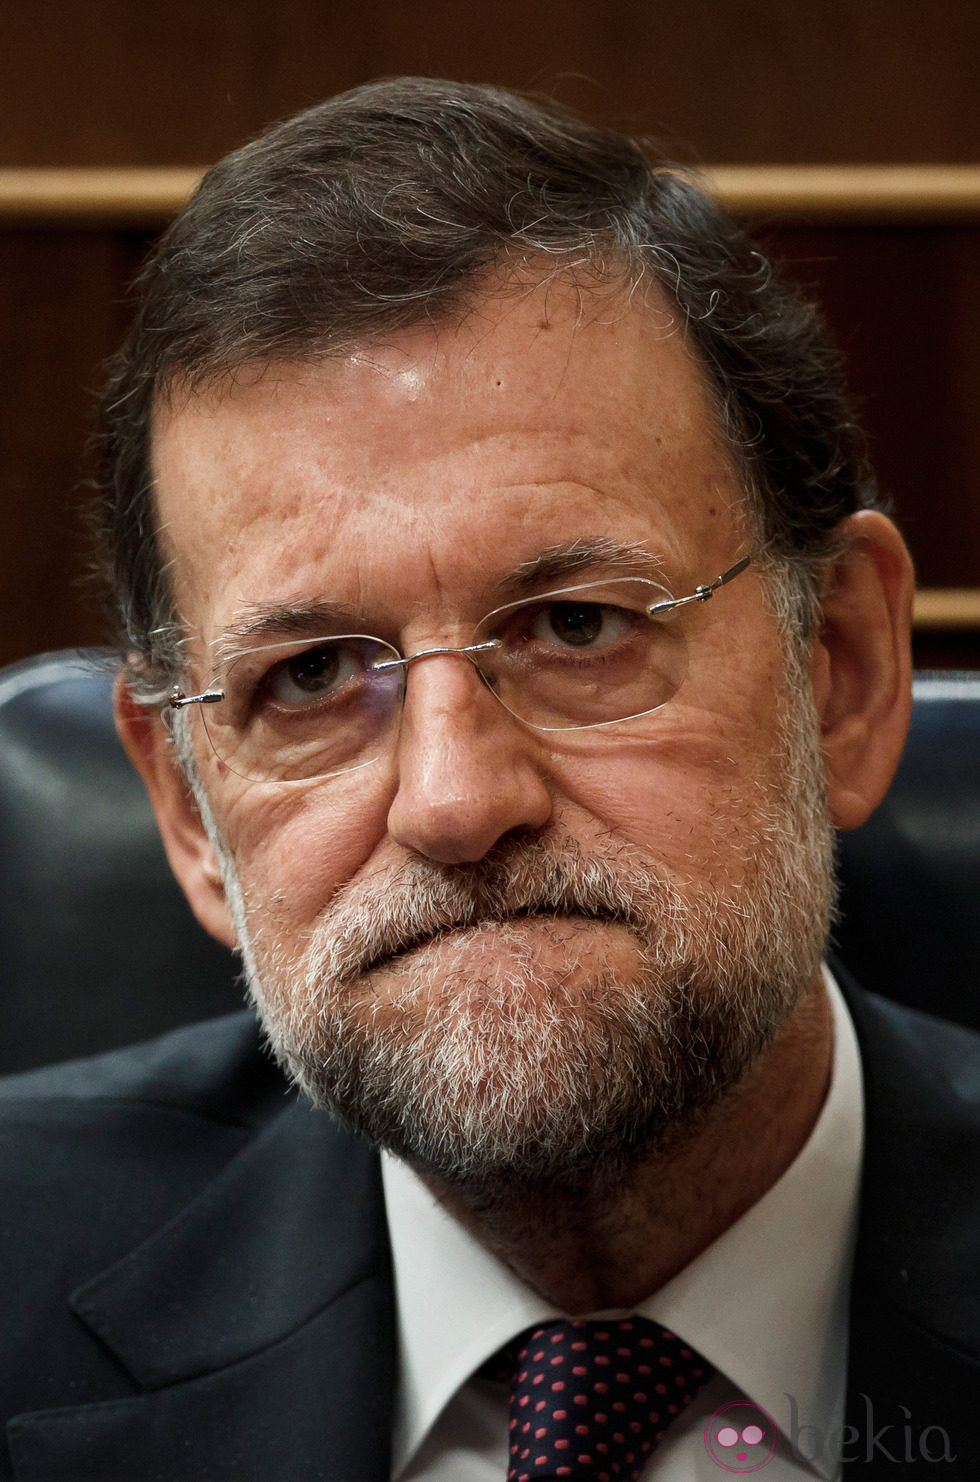 Mariano desesperado - Las caras de Mariano Rajoy Foto en Bekia Actualidad